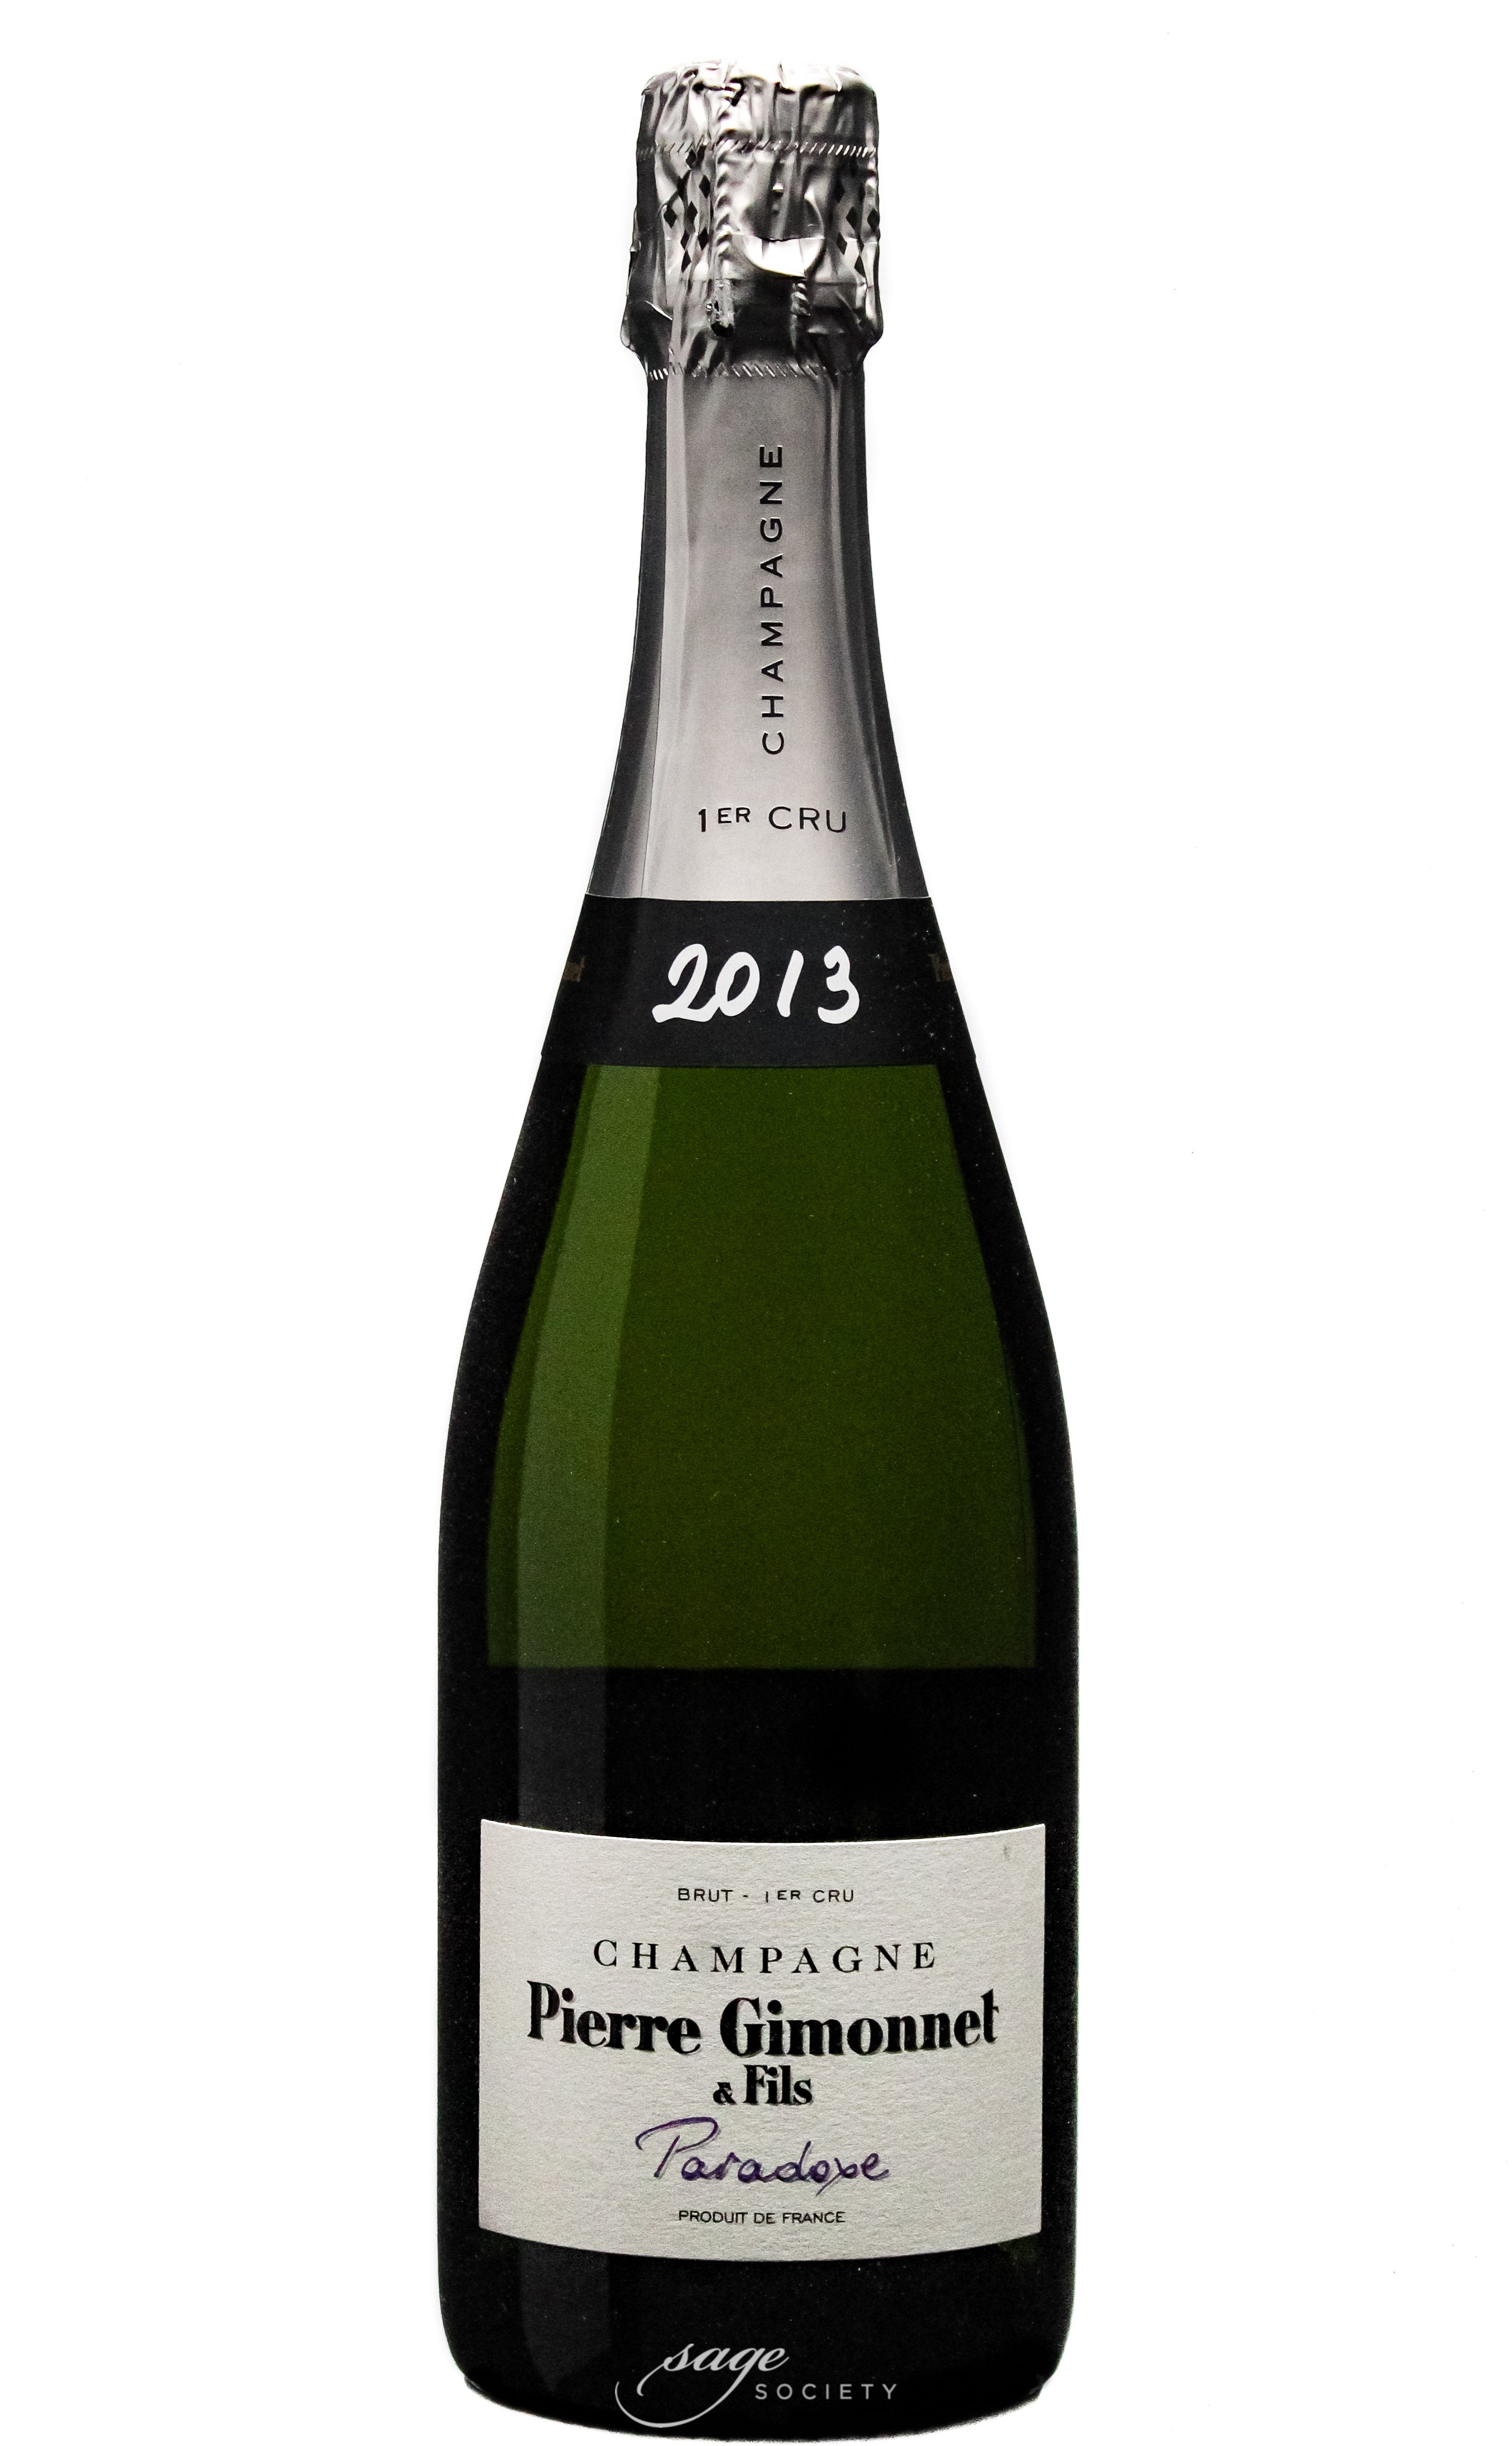 2013 Pierre Gimonnet & Fils Champagne Premier Cru Brut Paradoxe